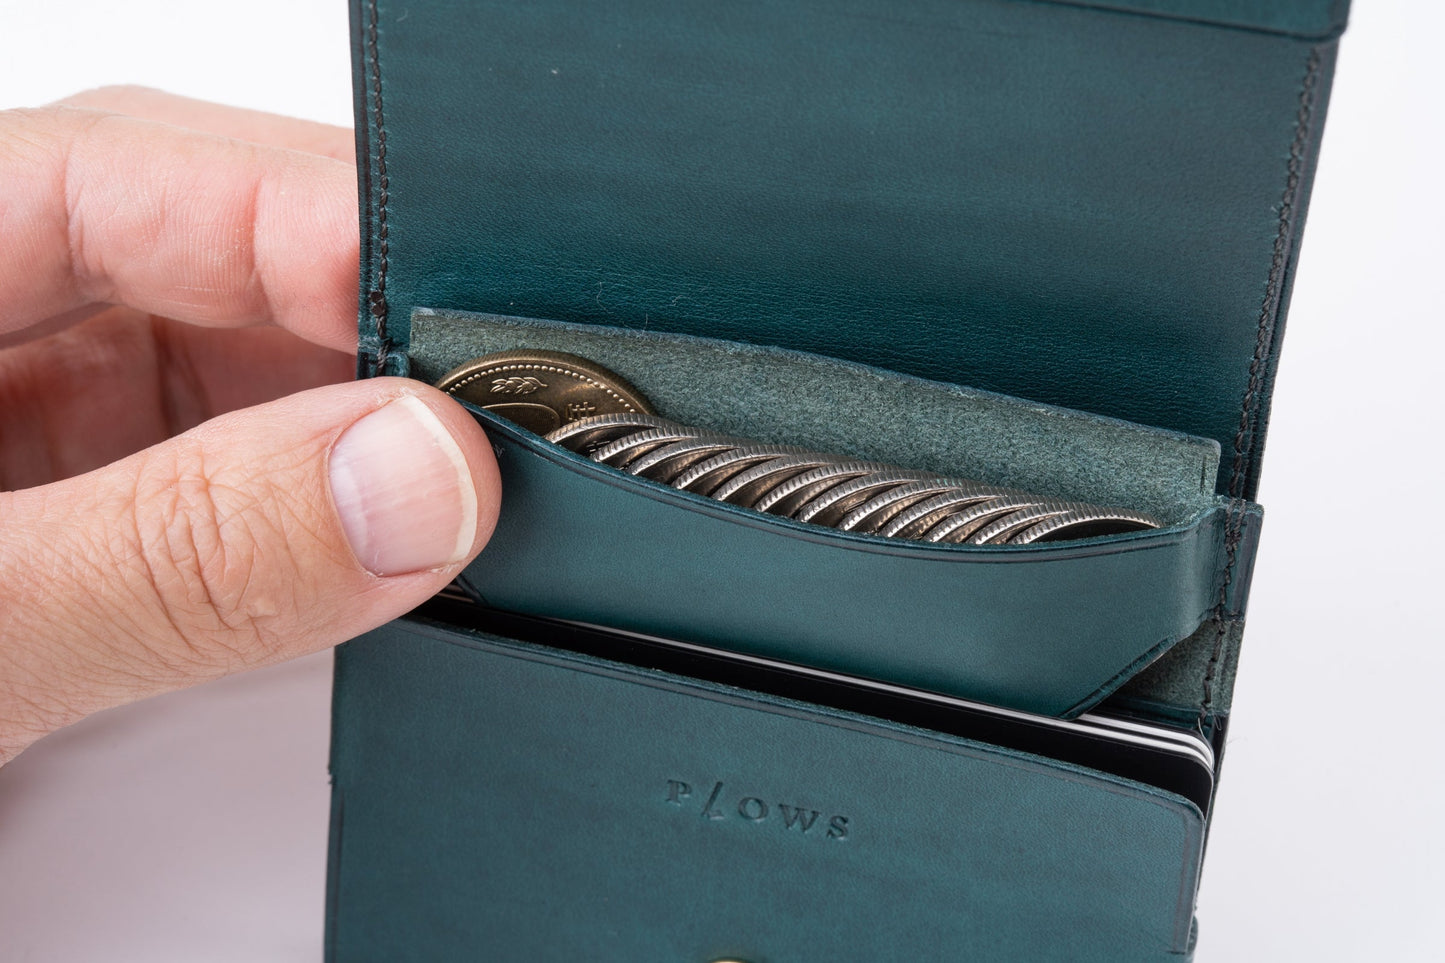 もっと 小さく薄い財布 dritto 2 thin　左利き用